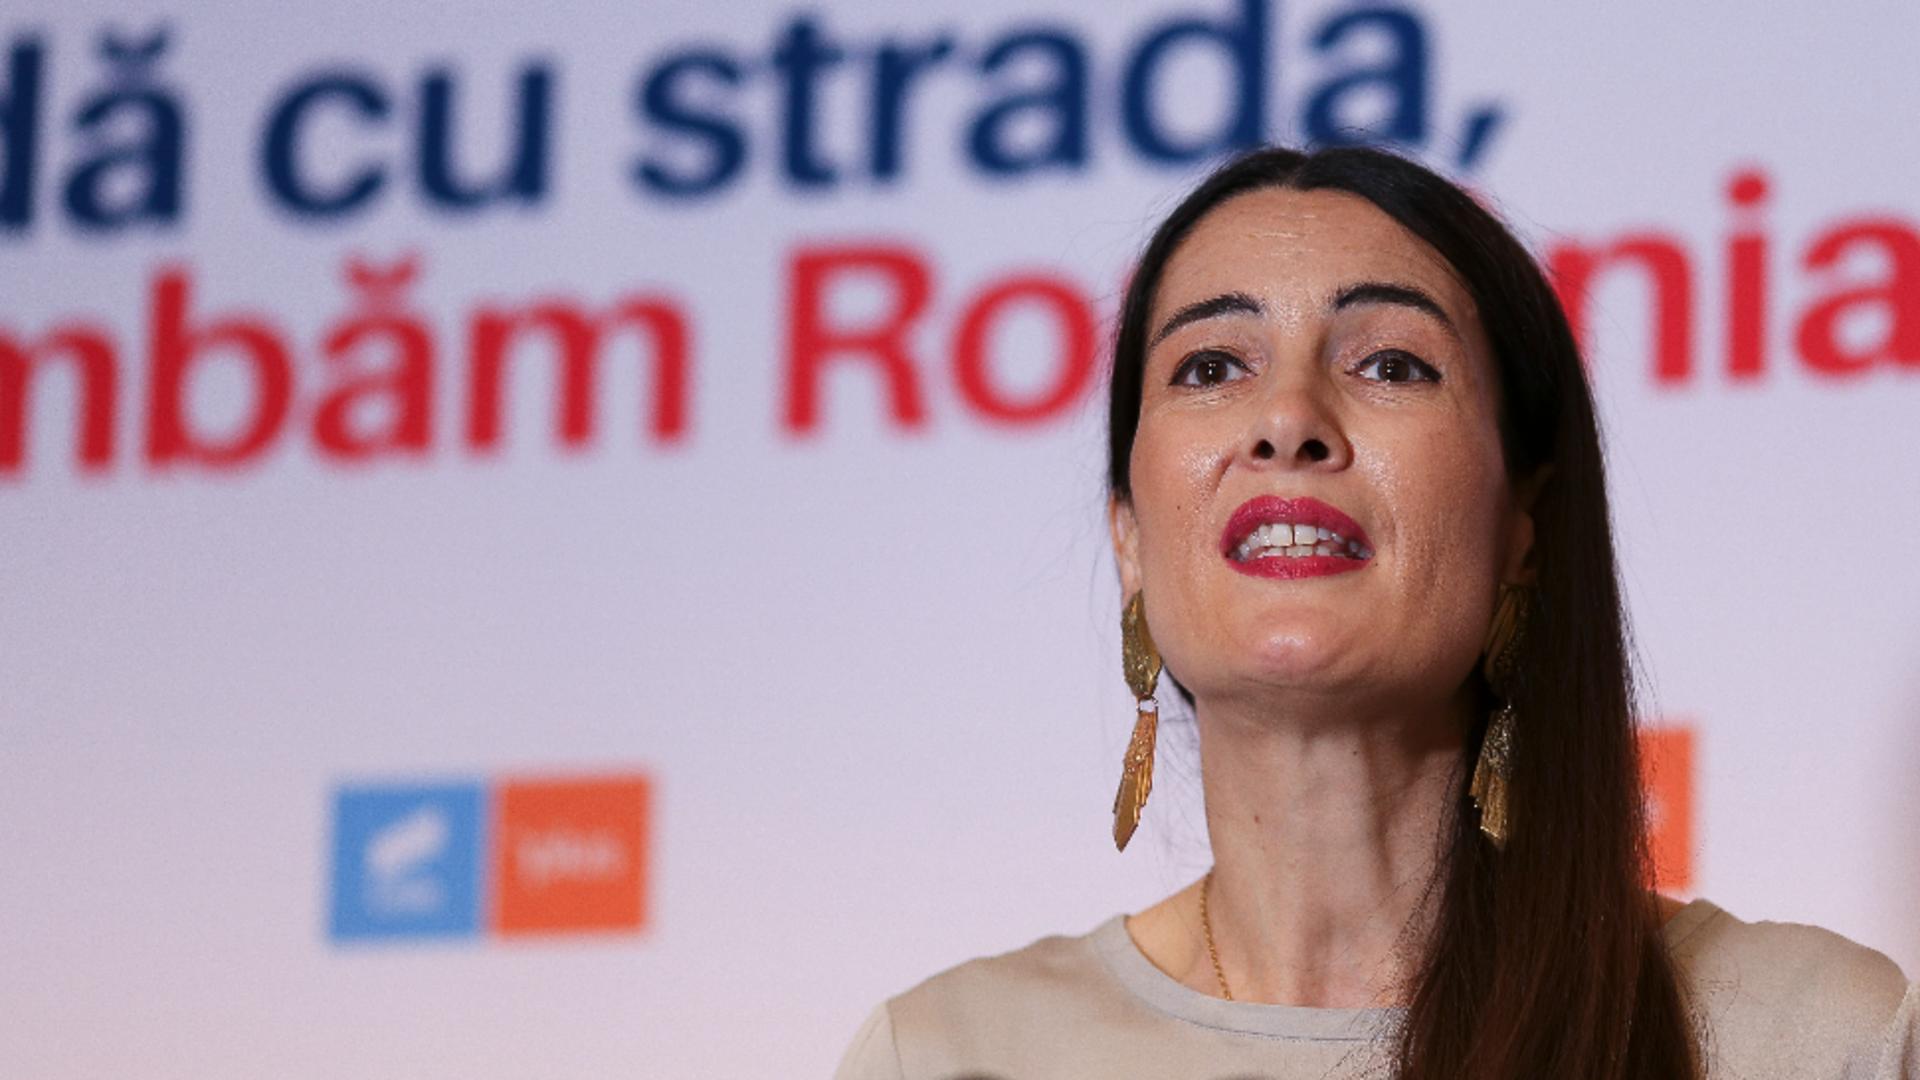 Clotilde Armand șochează din nou: “Sunt linșată pentru reformele luate”. Primărița de la Sectorul 1 susține că este persecutată la ordin politic